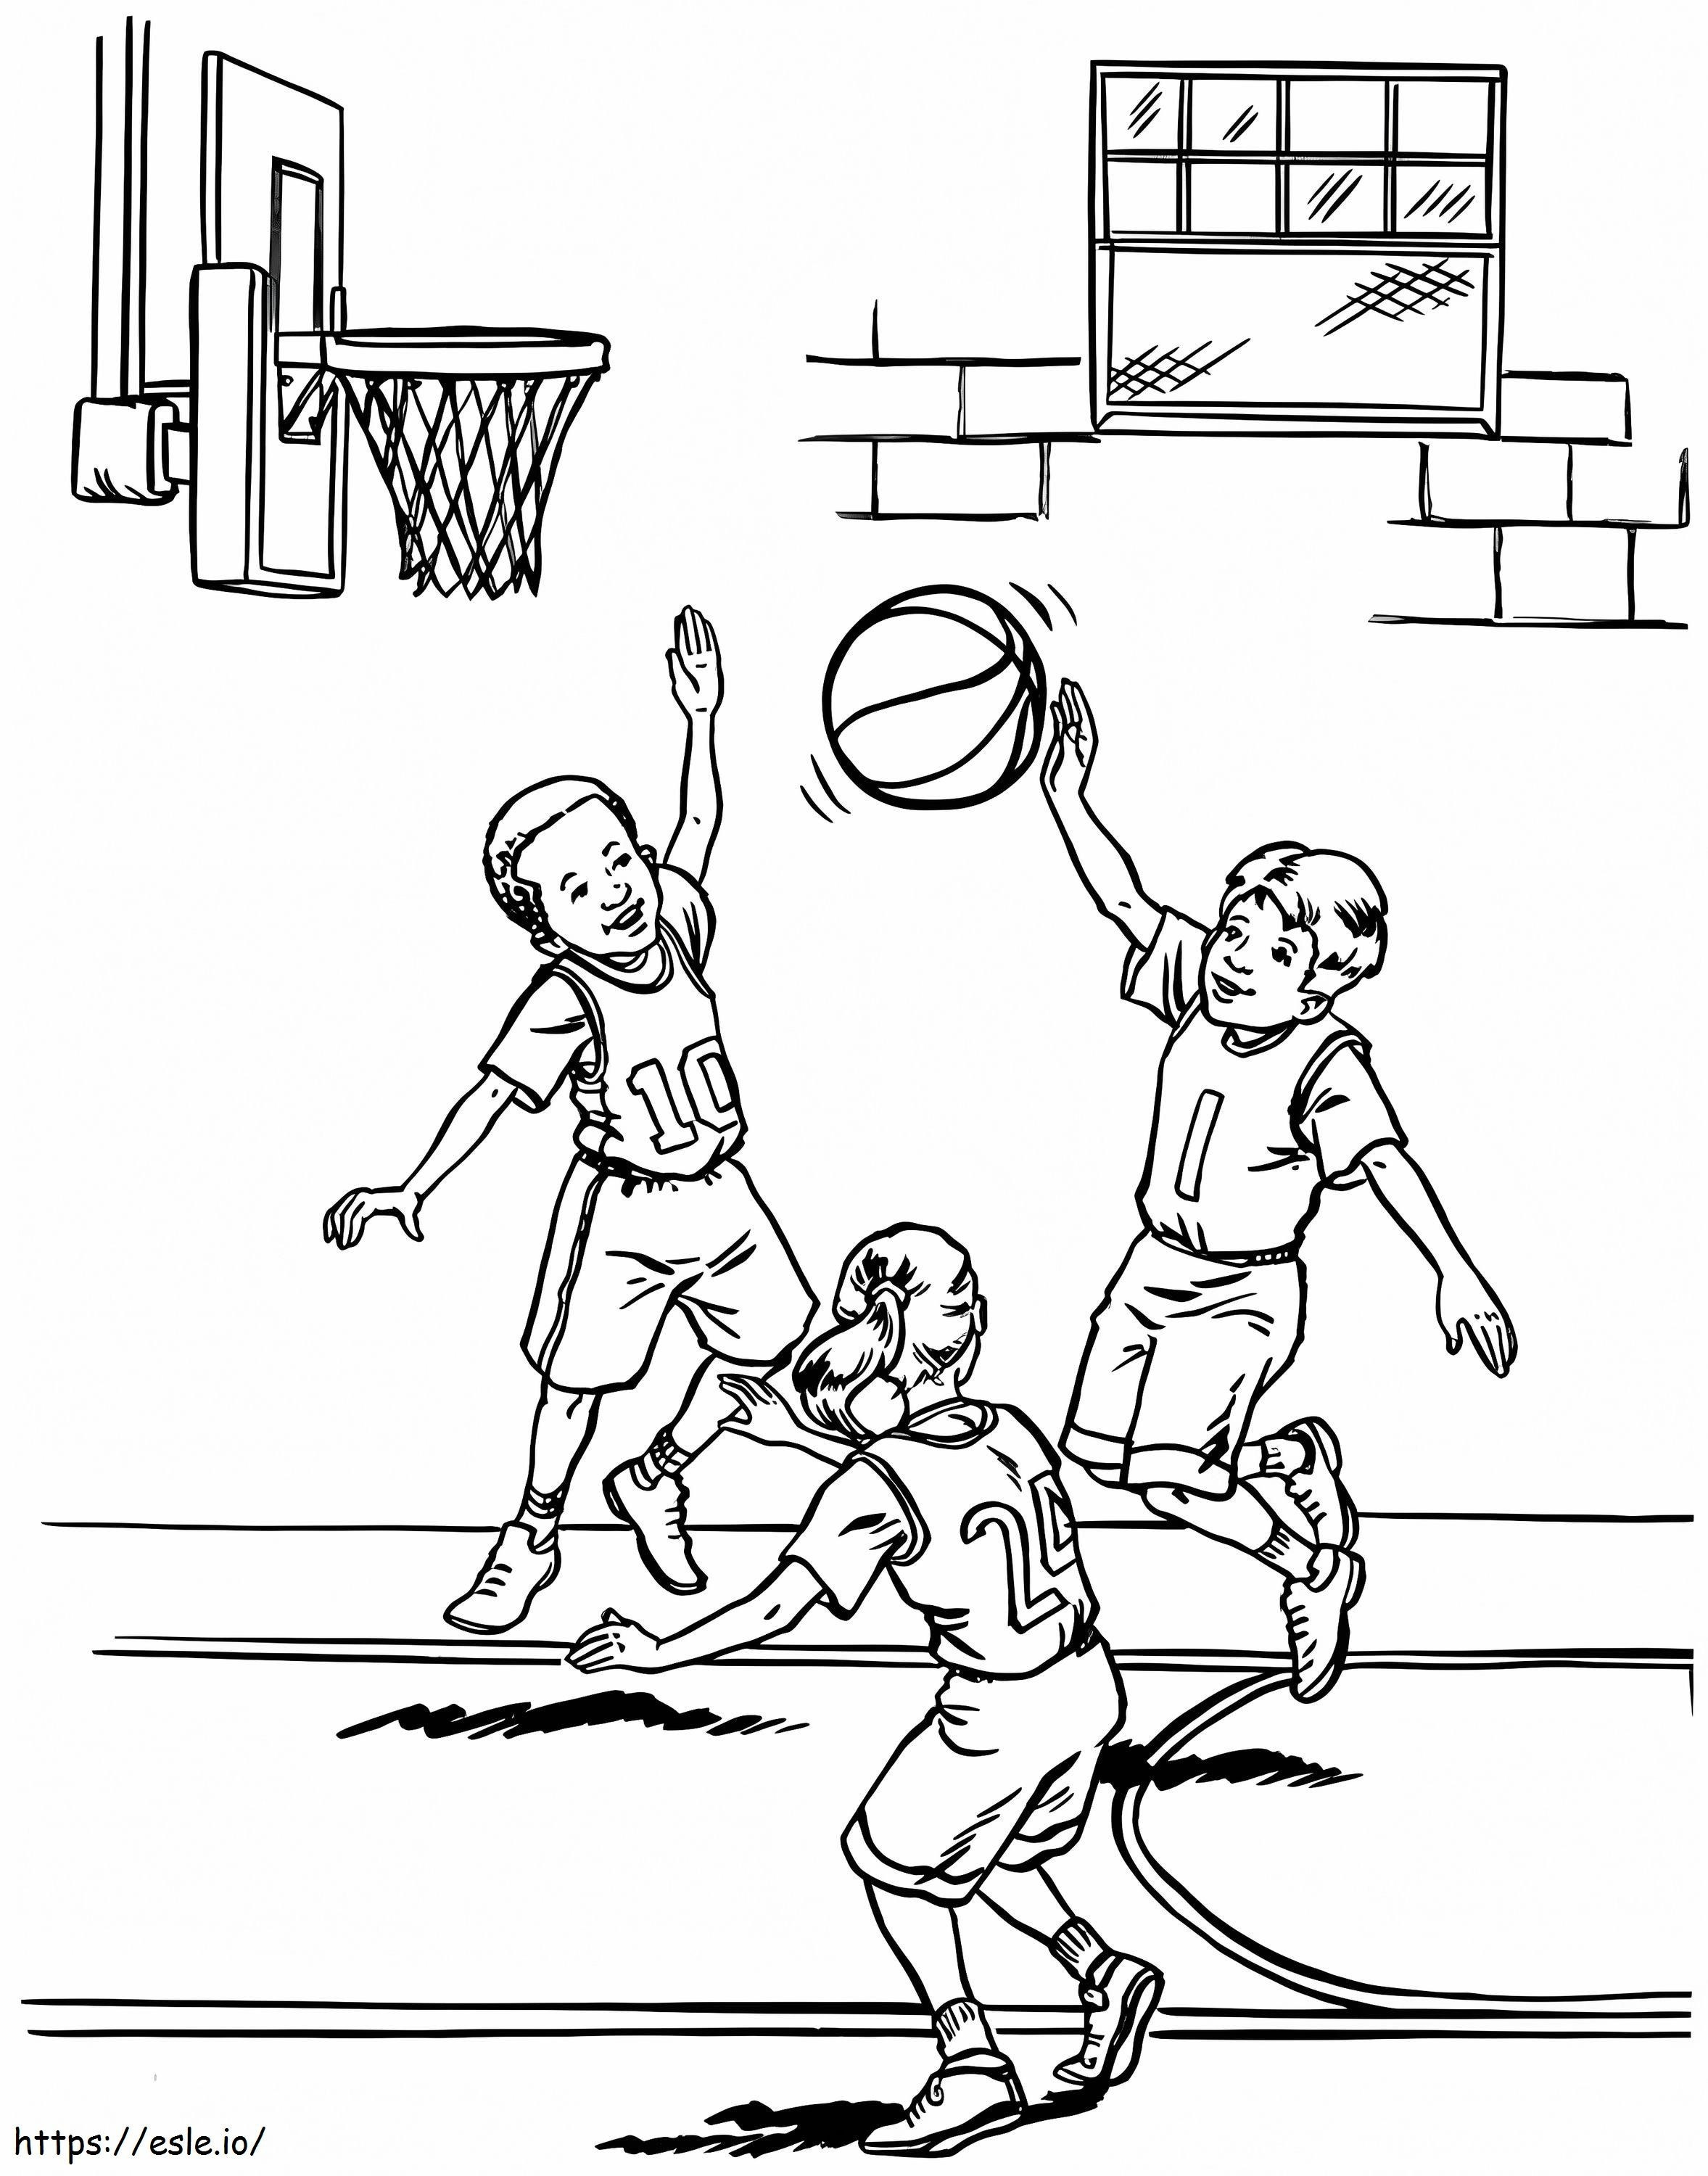 Drei Kinder spielen Basketball ausmalbilder